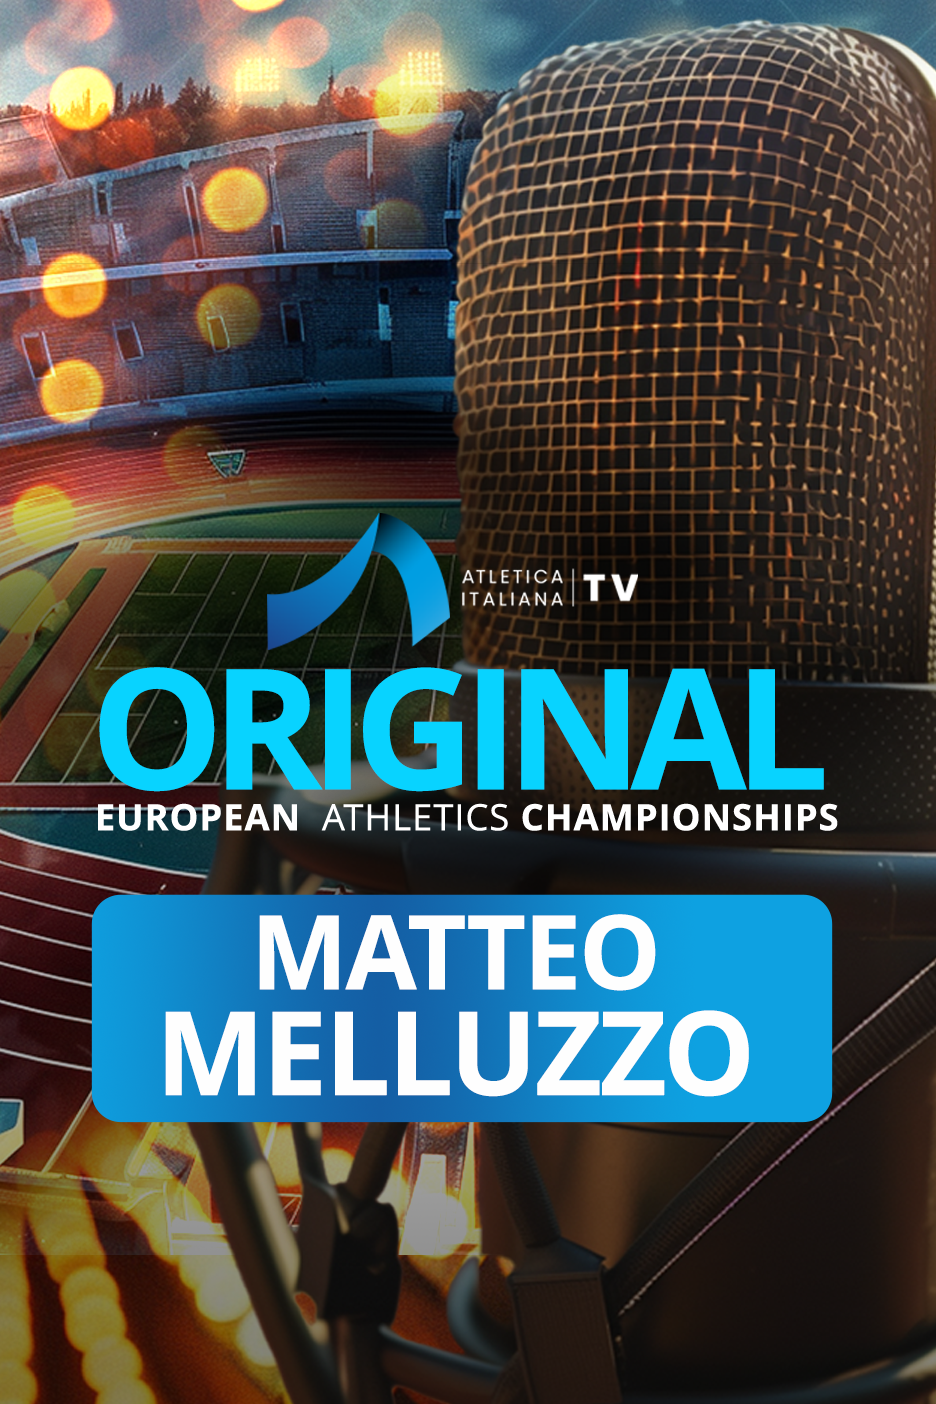 Matteo Melluzzo - Oro 4x100